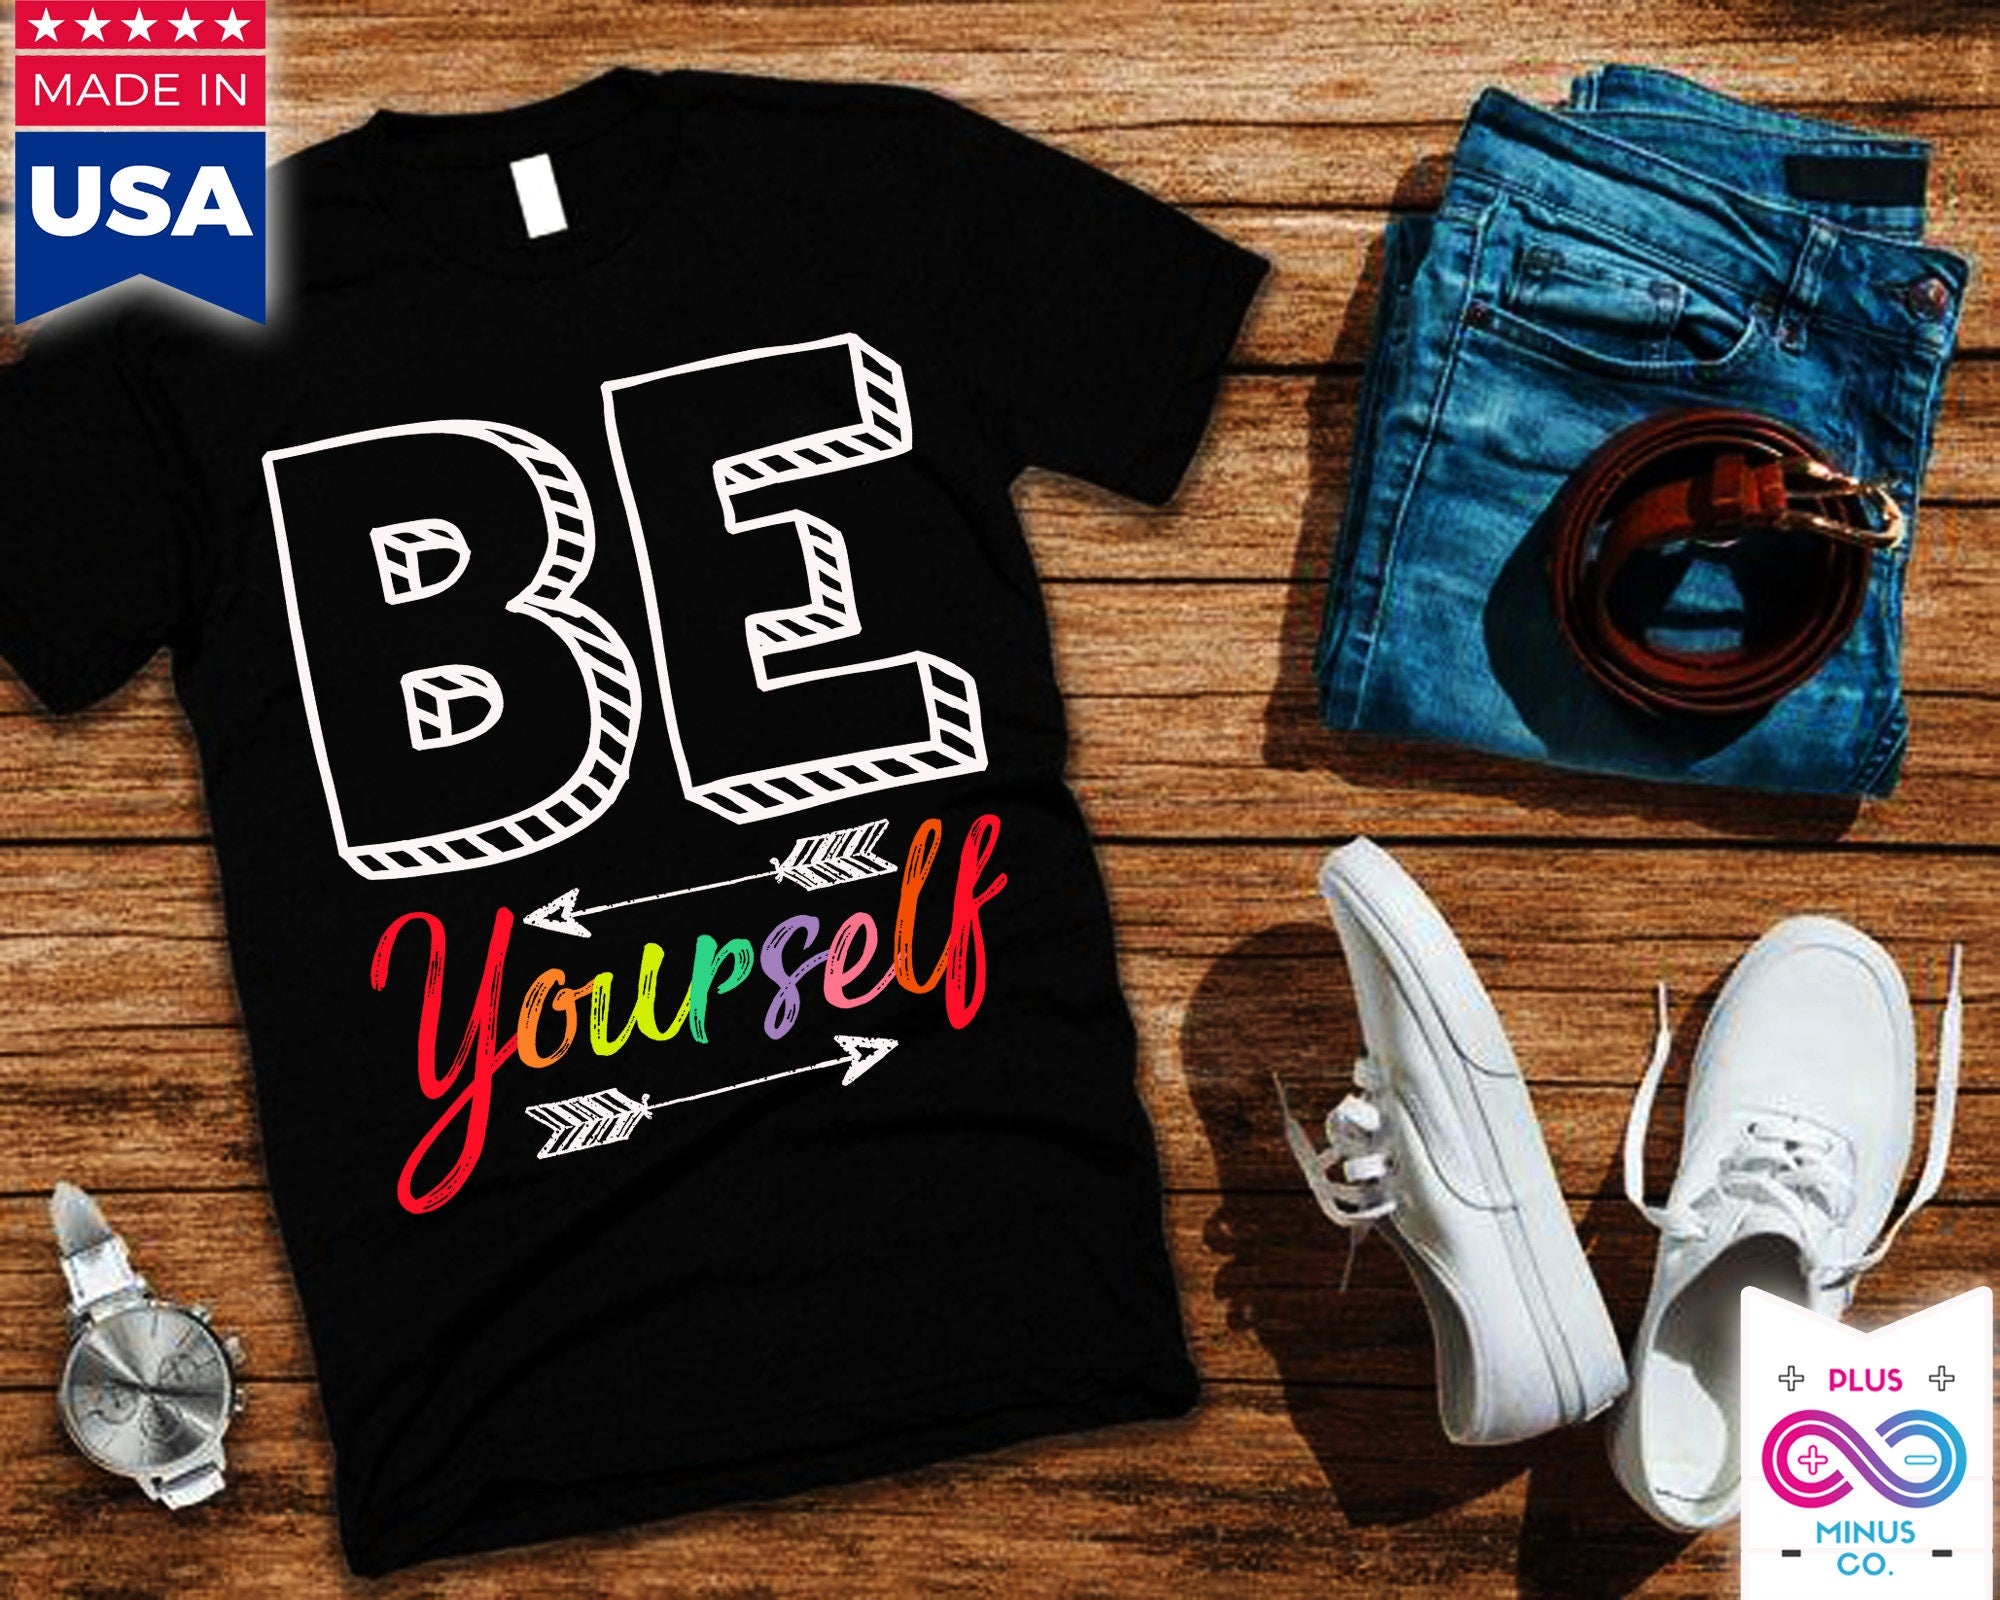 Wees jezelf T-shirts, wees jezelf Unisex Crewneck T-shirt, trendy Tees, Be You Shirt, motiverend shirt, inspirerend shirt, cadeau - plusminusco.com